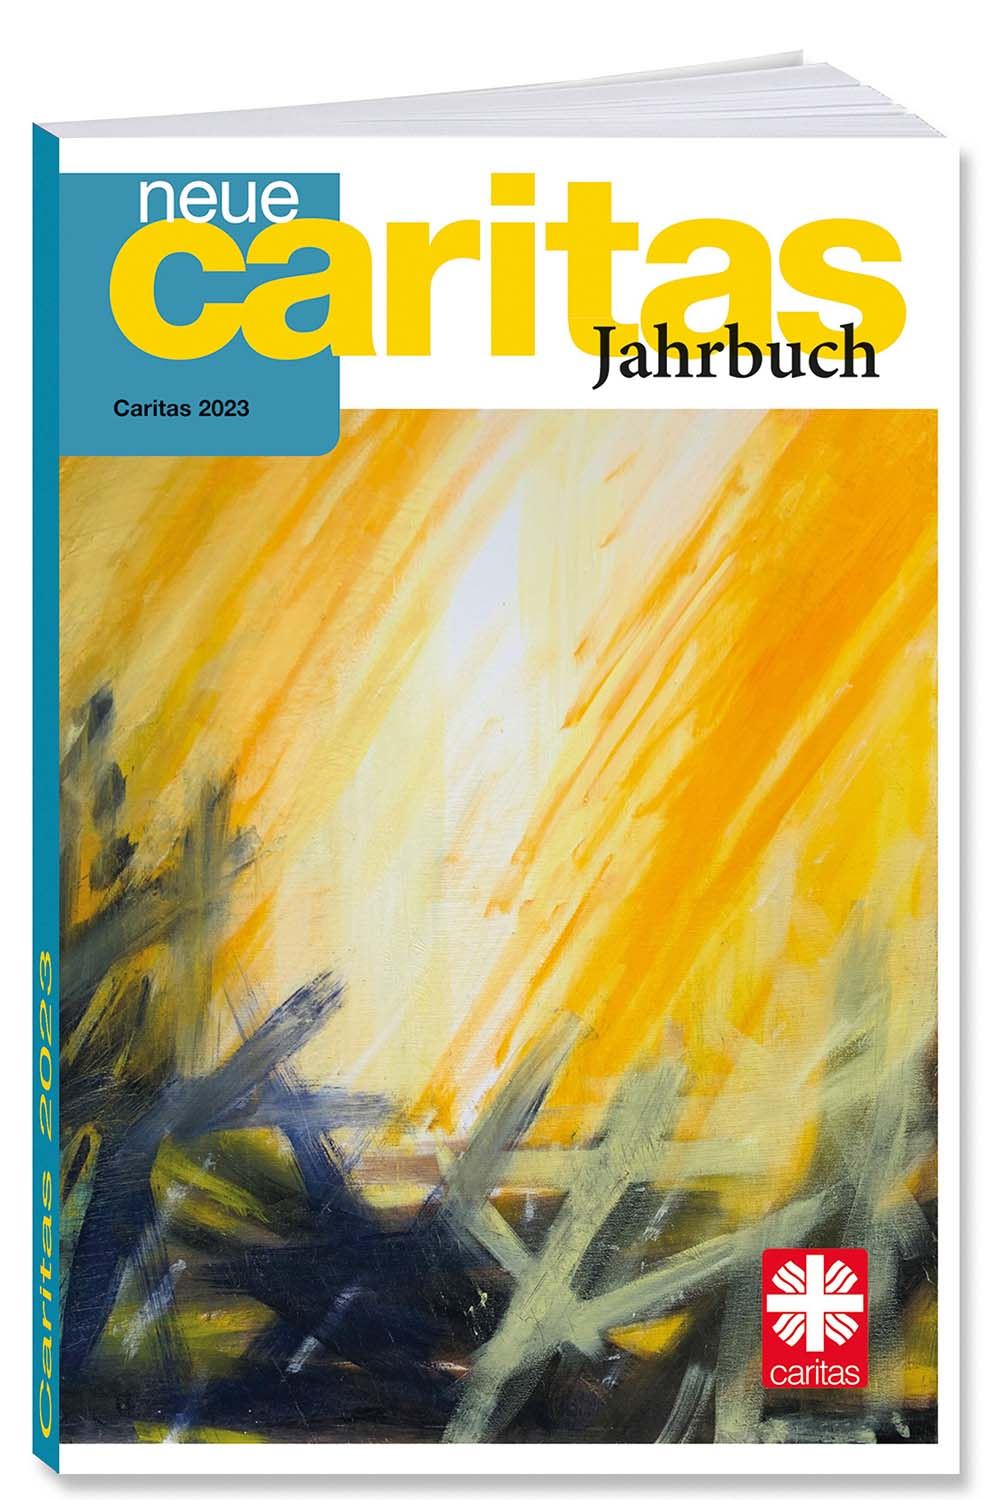 Das Cover des Caritas Jahrbuchs 2022.